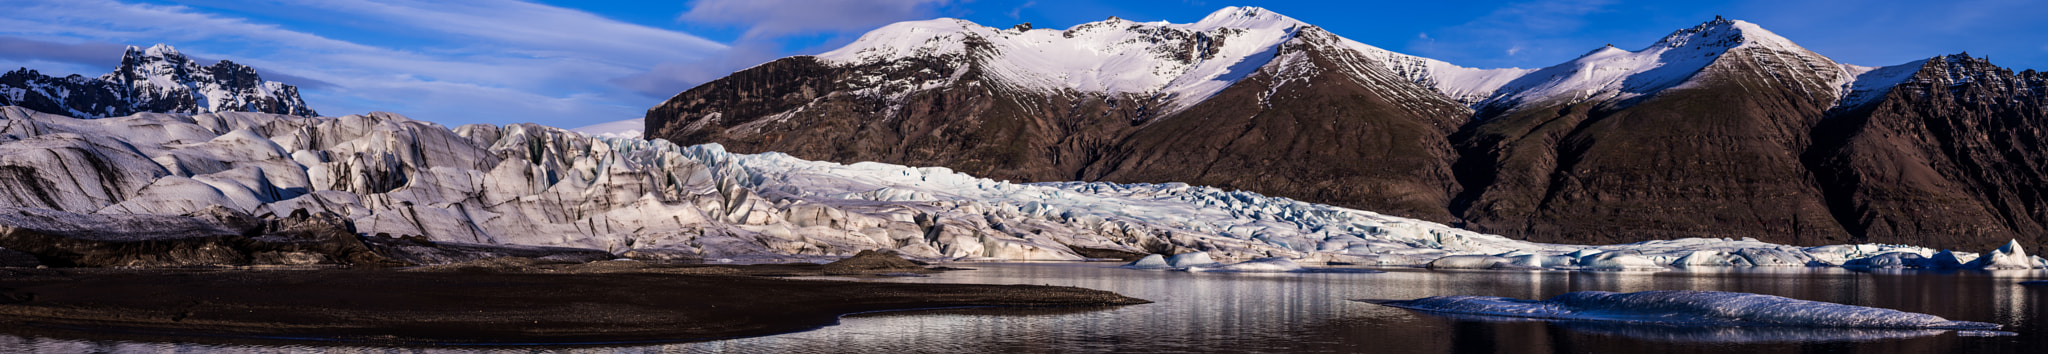 Nikon D500 sample photo. Glaciar panorama photography